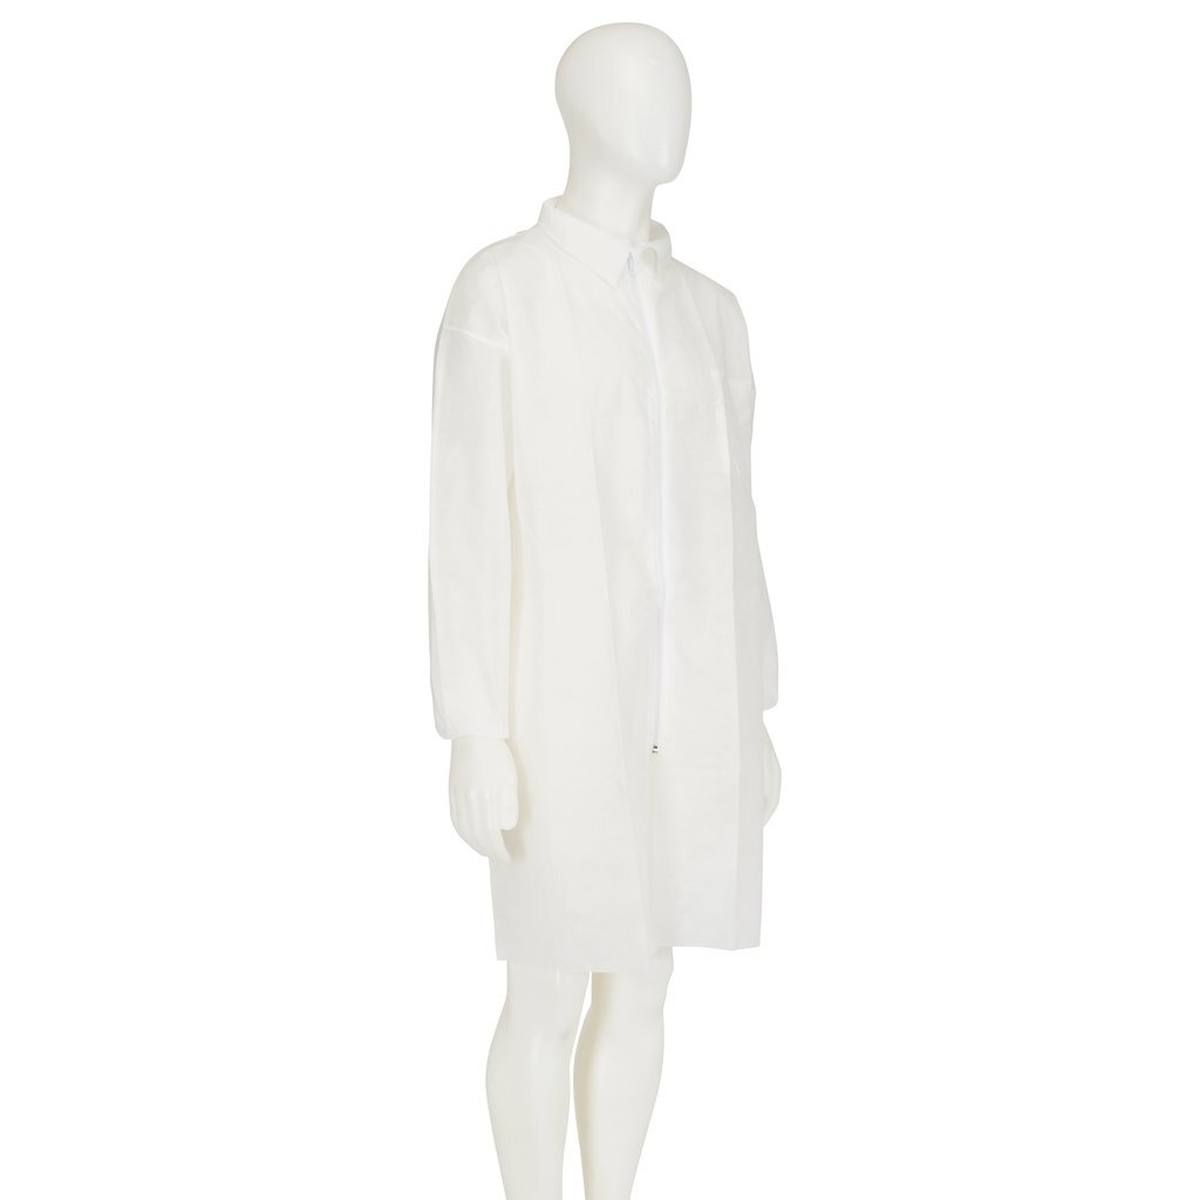 cappotto 3M 4400, bianco, taglia S, materiale 100% polipropilene, traspirante, molto leggero, con chiusura a zip